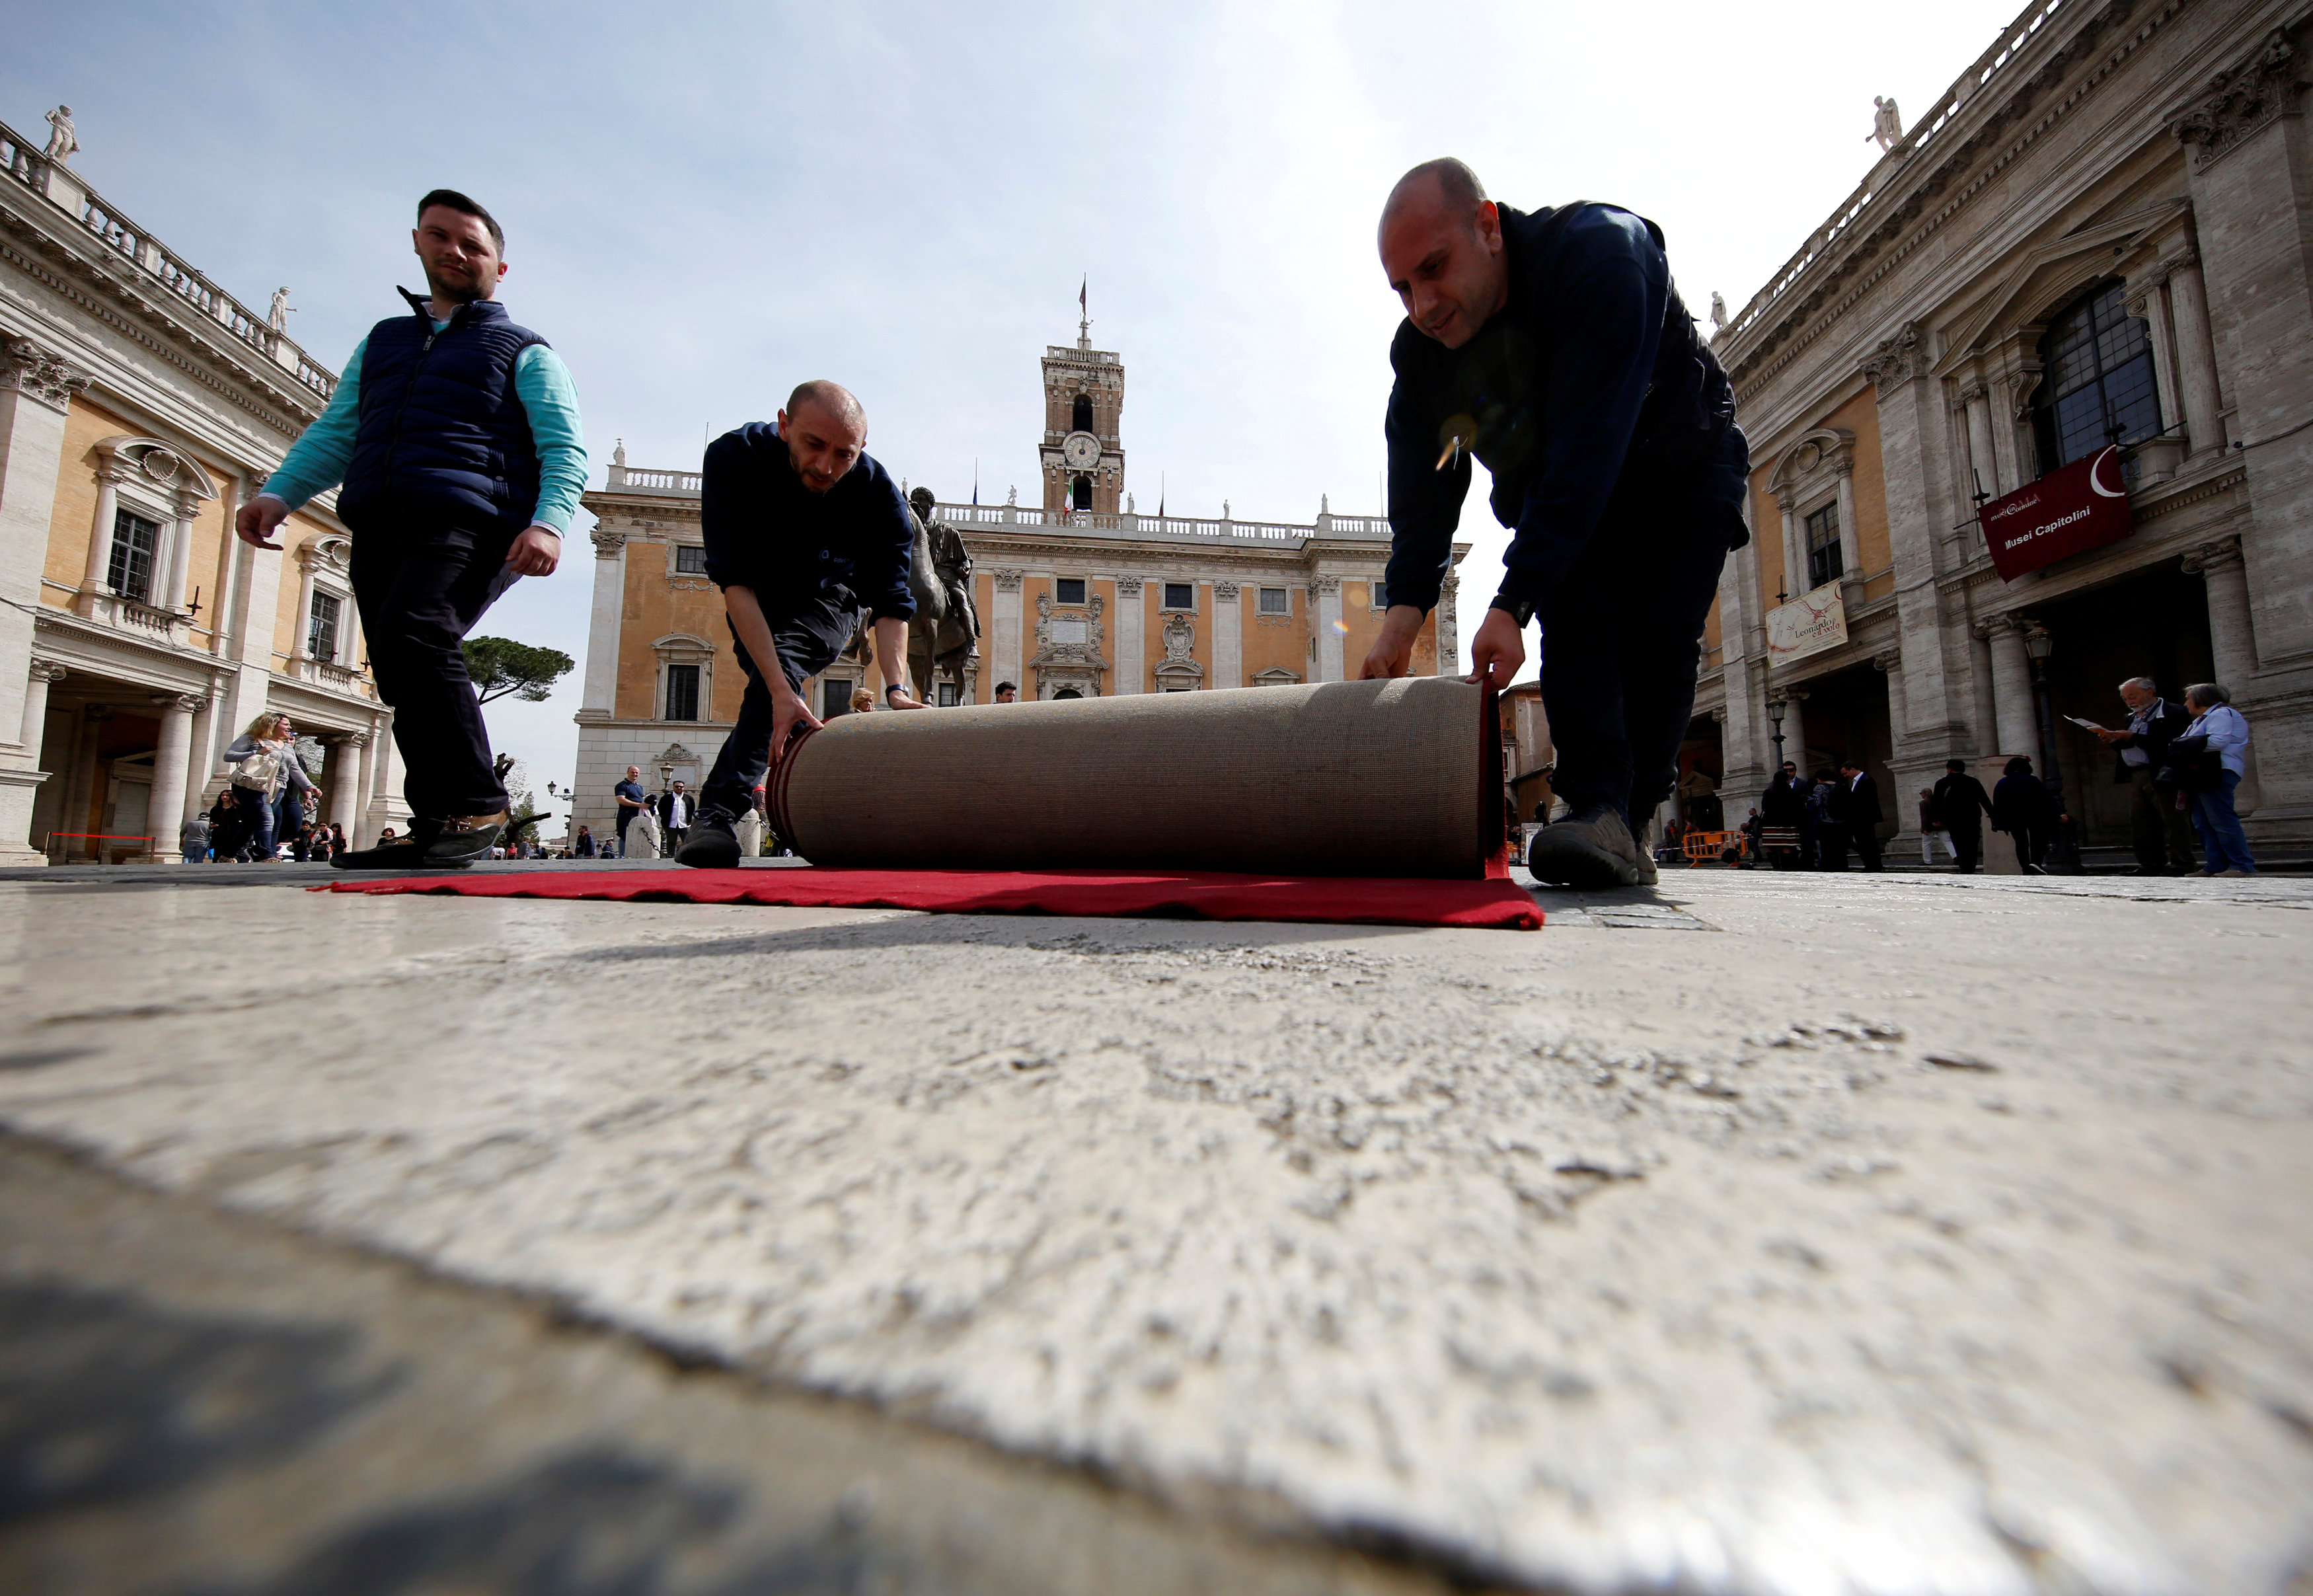 Δρακόντεια μέτρα ασφαλείας στη Ρώμη για την επετειακή Σύνοδο Κορυφής